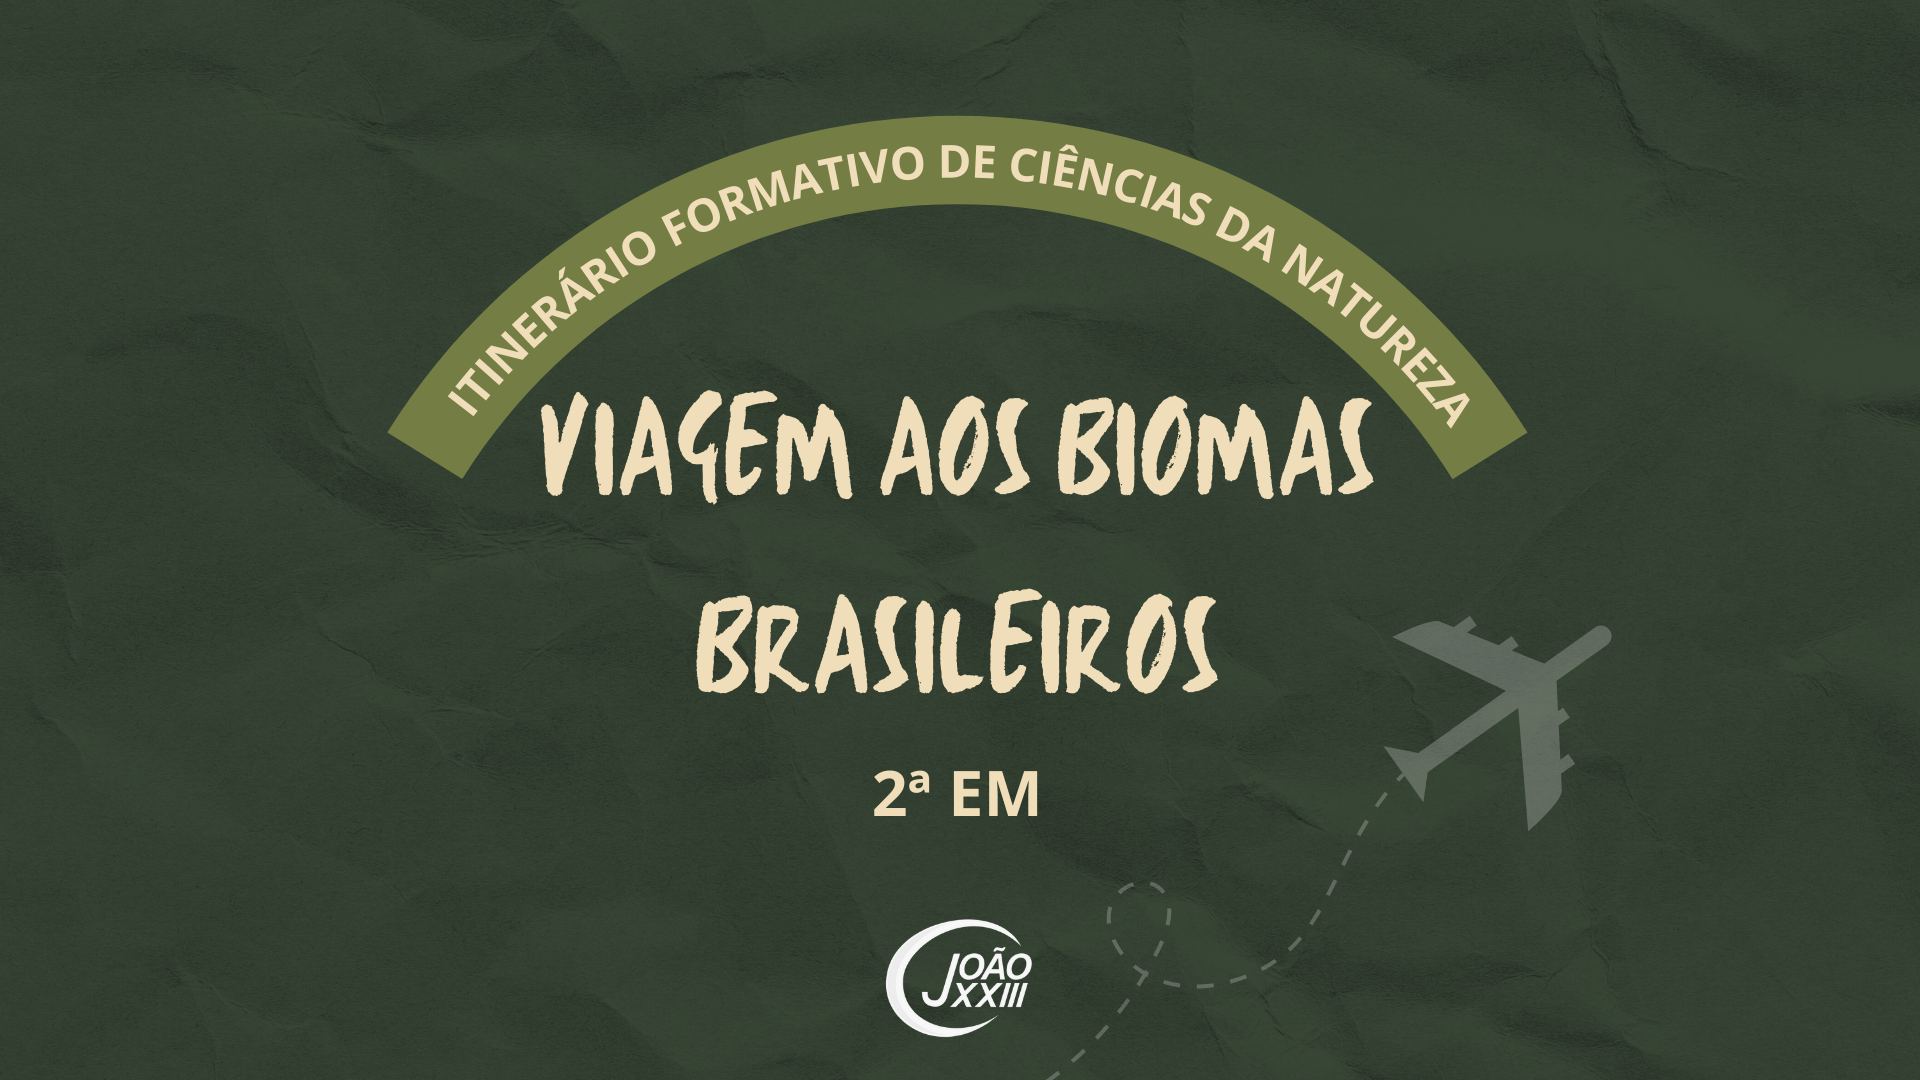 You are currently viewing Viagem aos biomas brasileiros